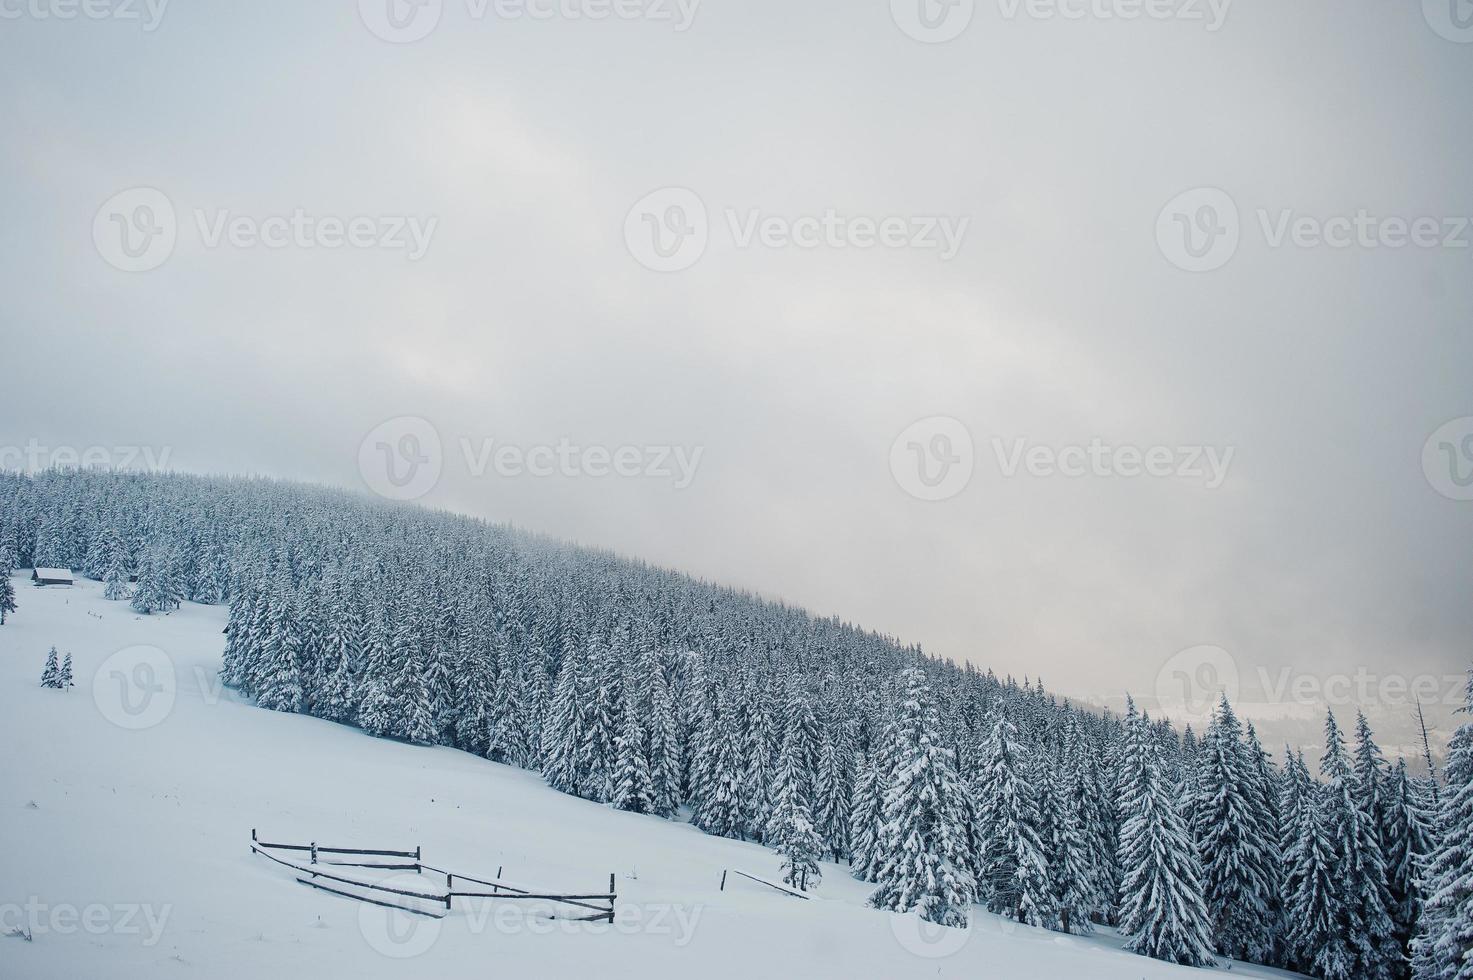 tallar täckta av snö på berget chomiak. vackra vinterlandskap av Karpaterna, Ukraina. majestätisk frostnatur. foto